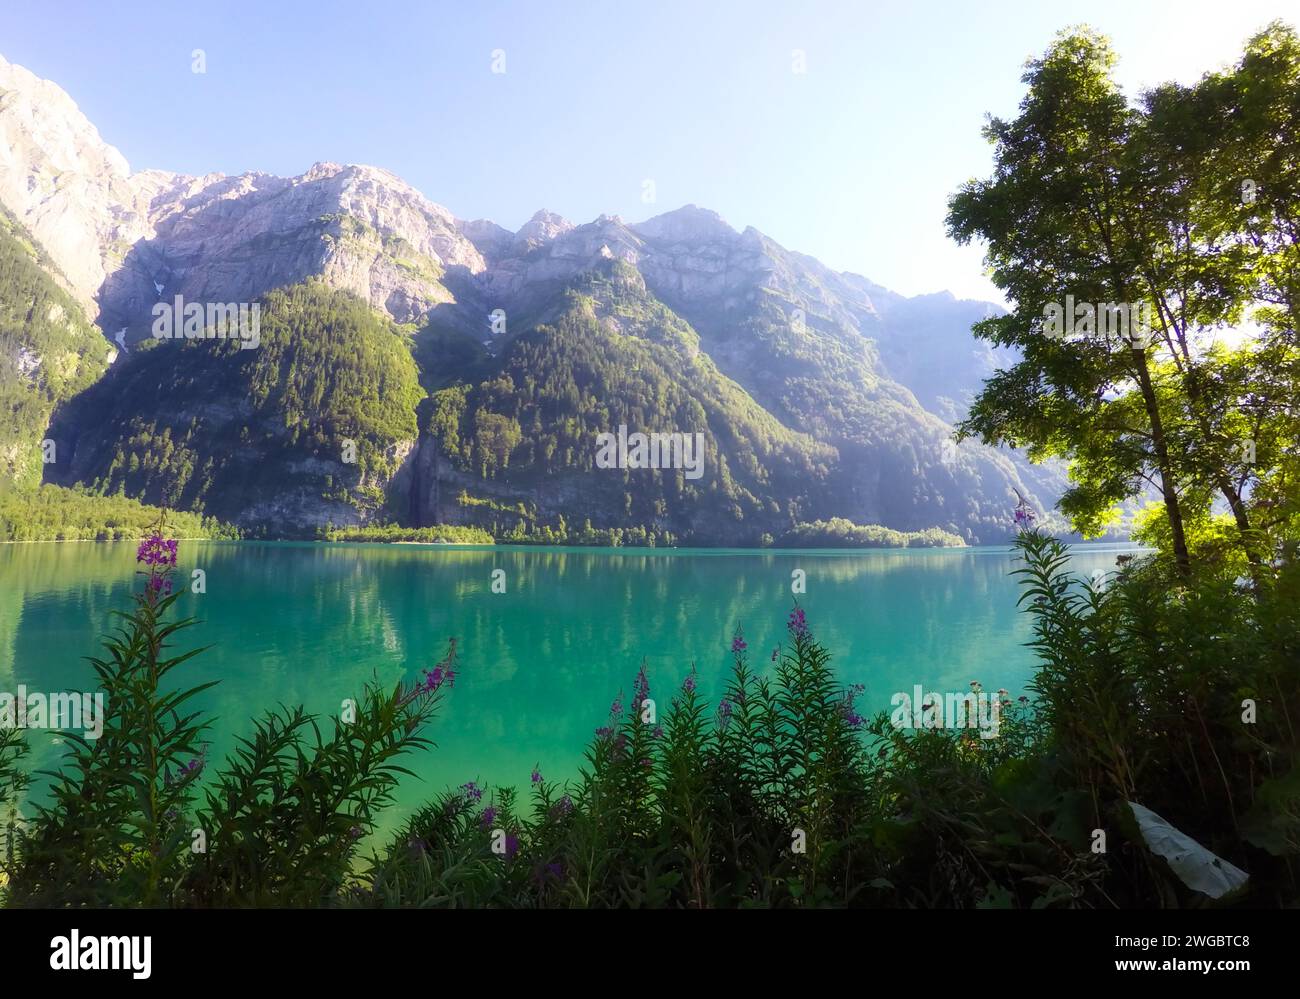 Klontalersee, and mountain landscape, Klontal Valley, Glarus, Switzerland Stock Photo